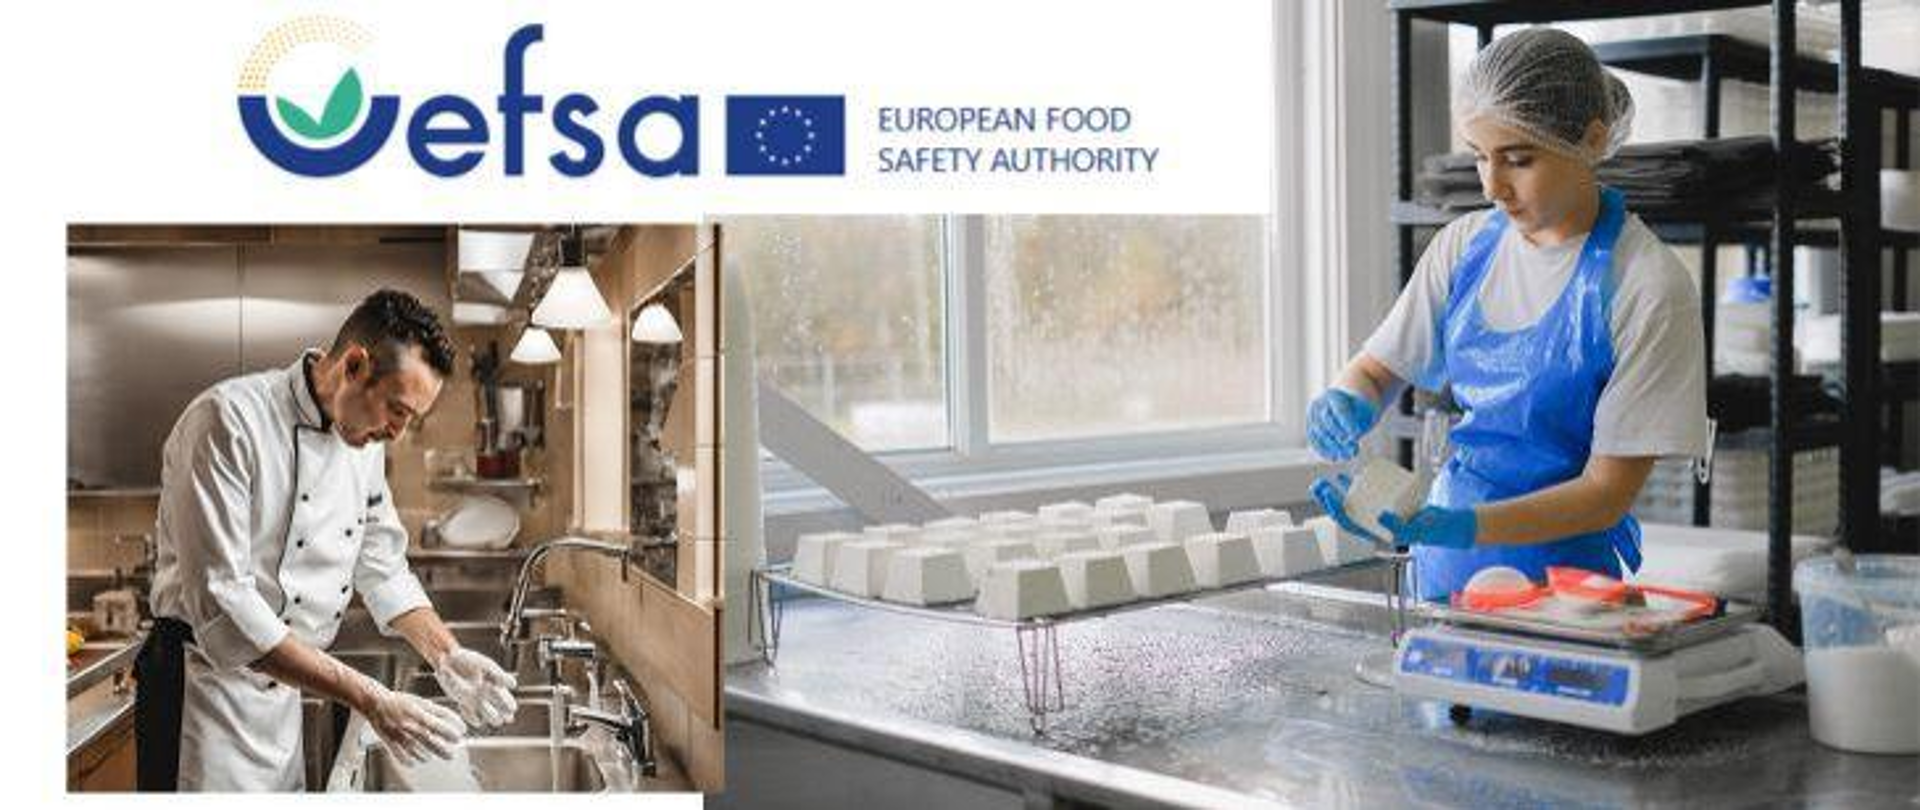 EFSA - Europejski Urząd ds. Bezpieczeństwa Żywności